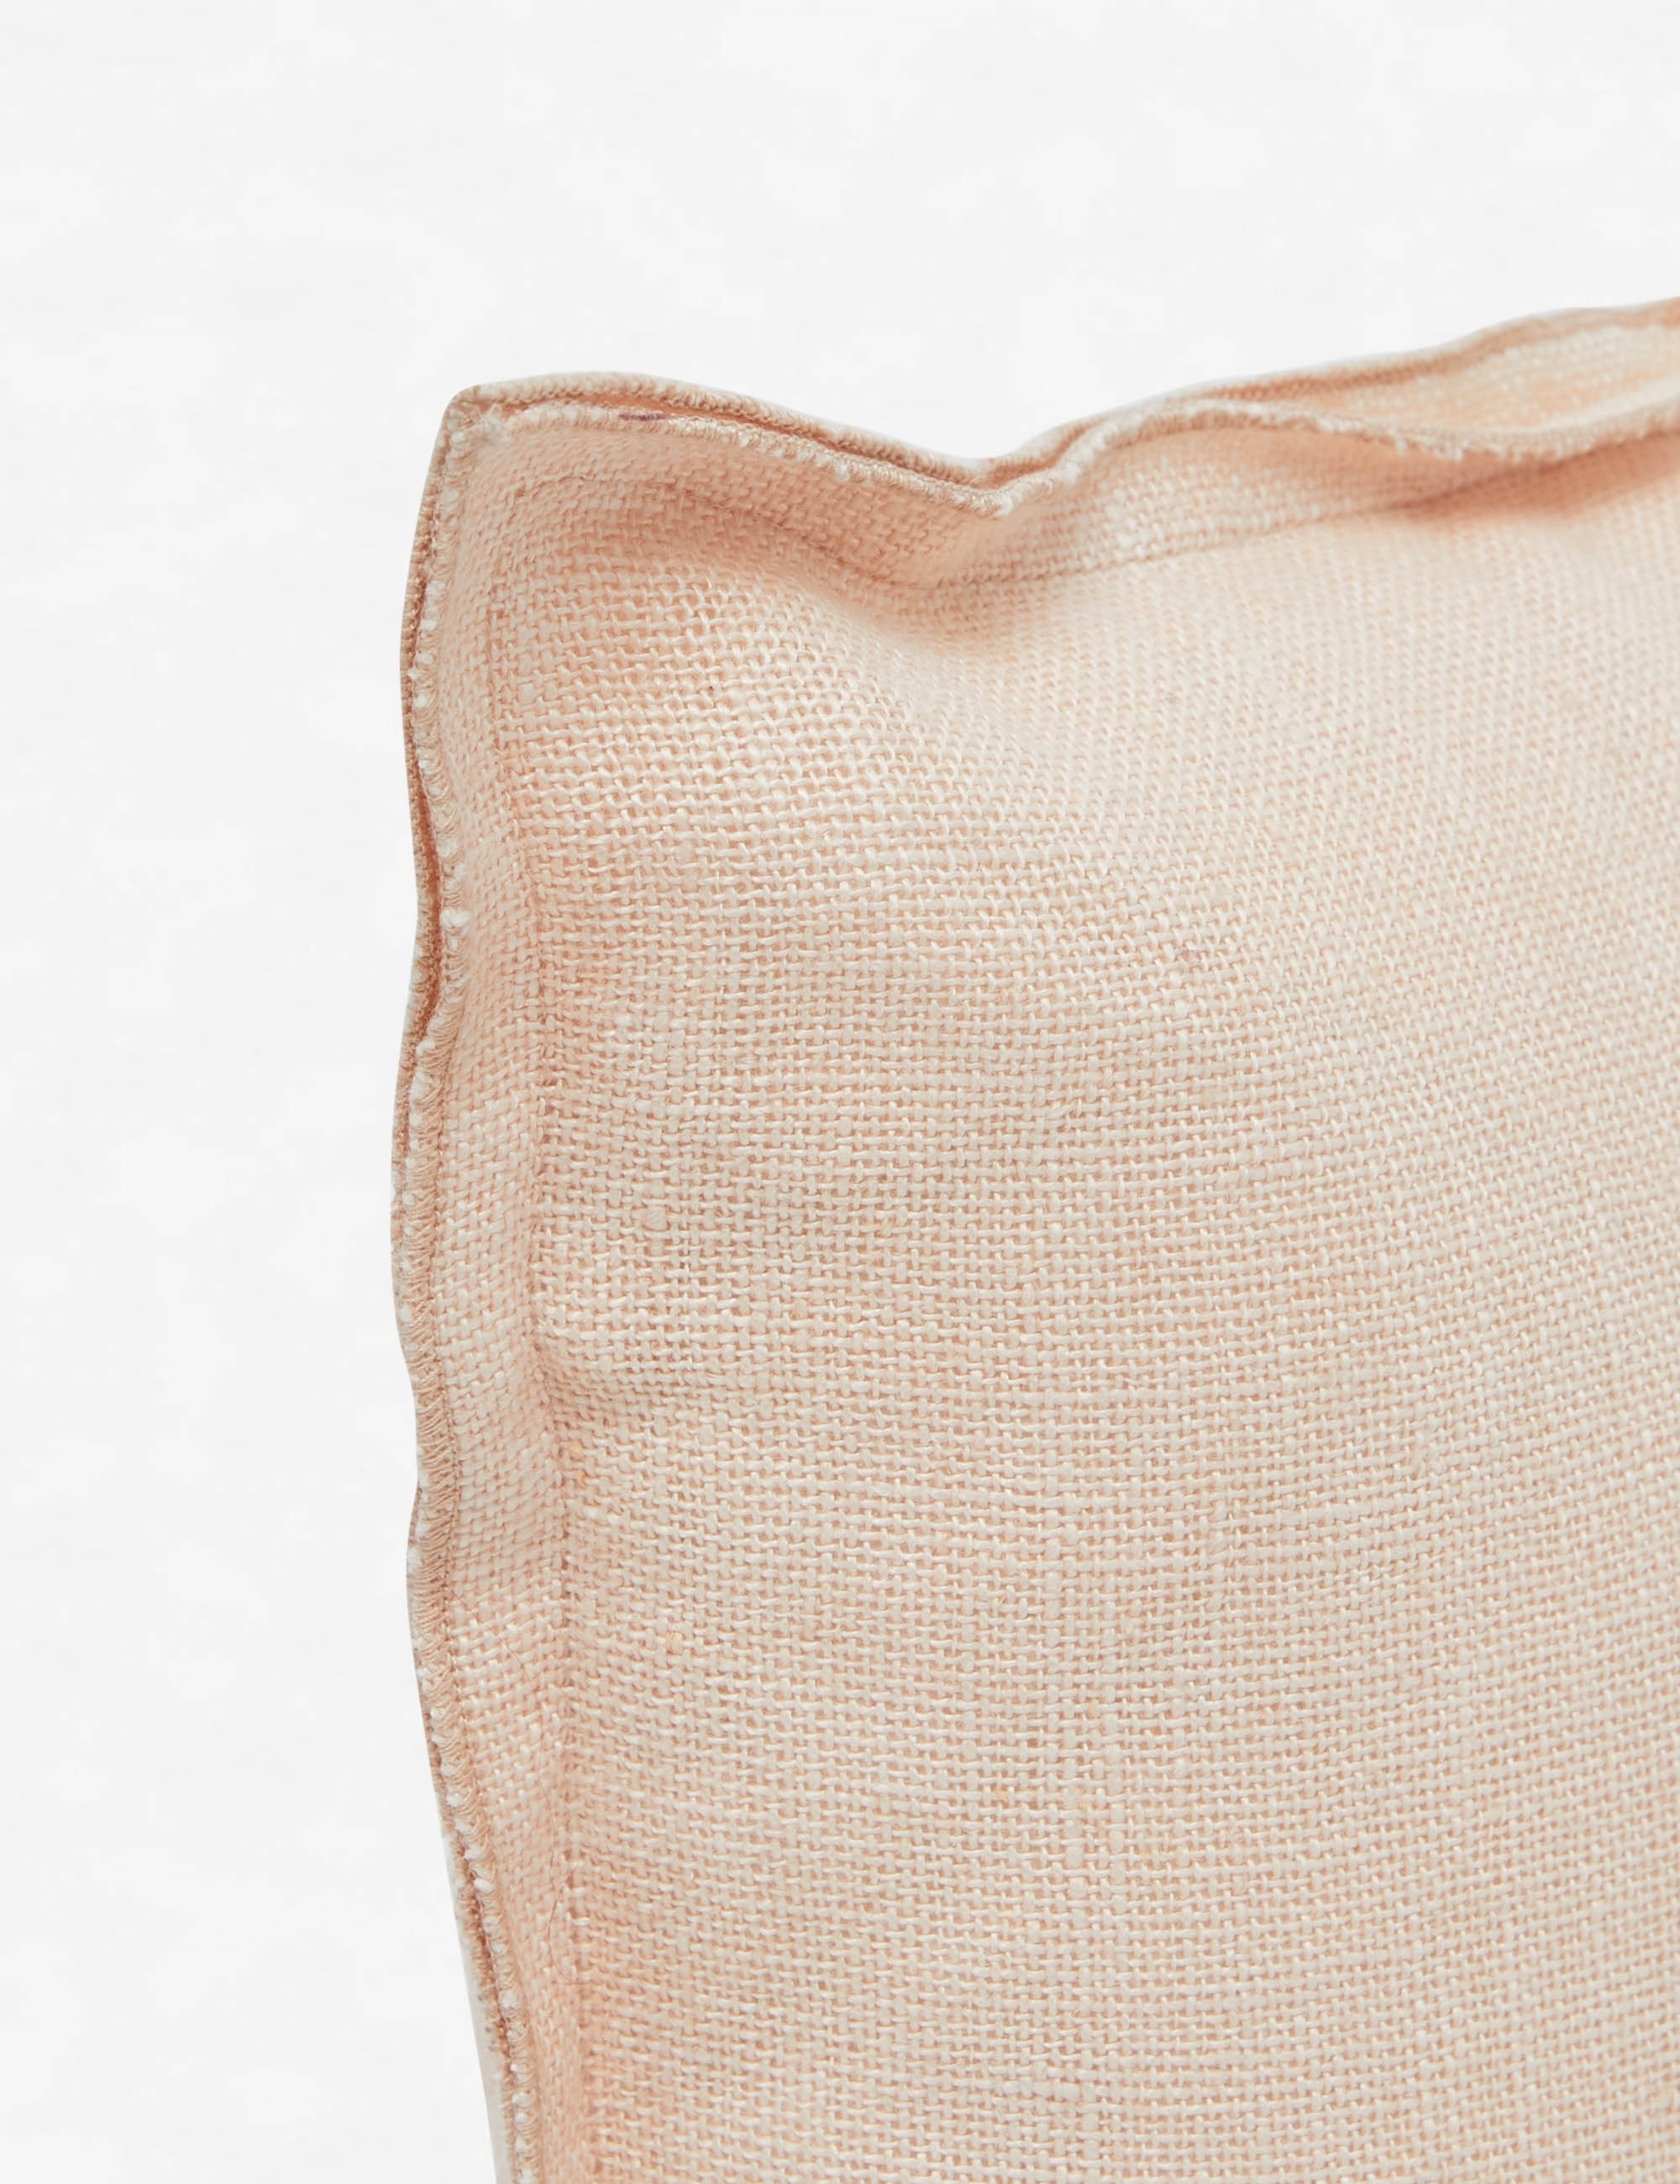 Arlo Linen Lumbar Pillow, Blush - Image 1